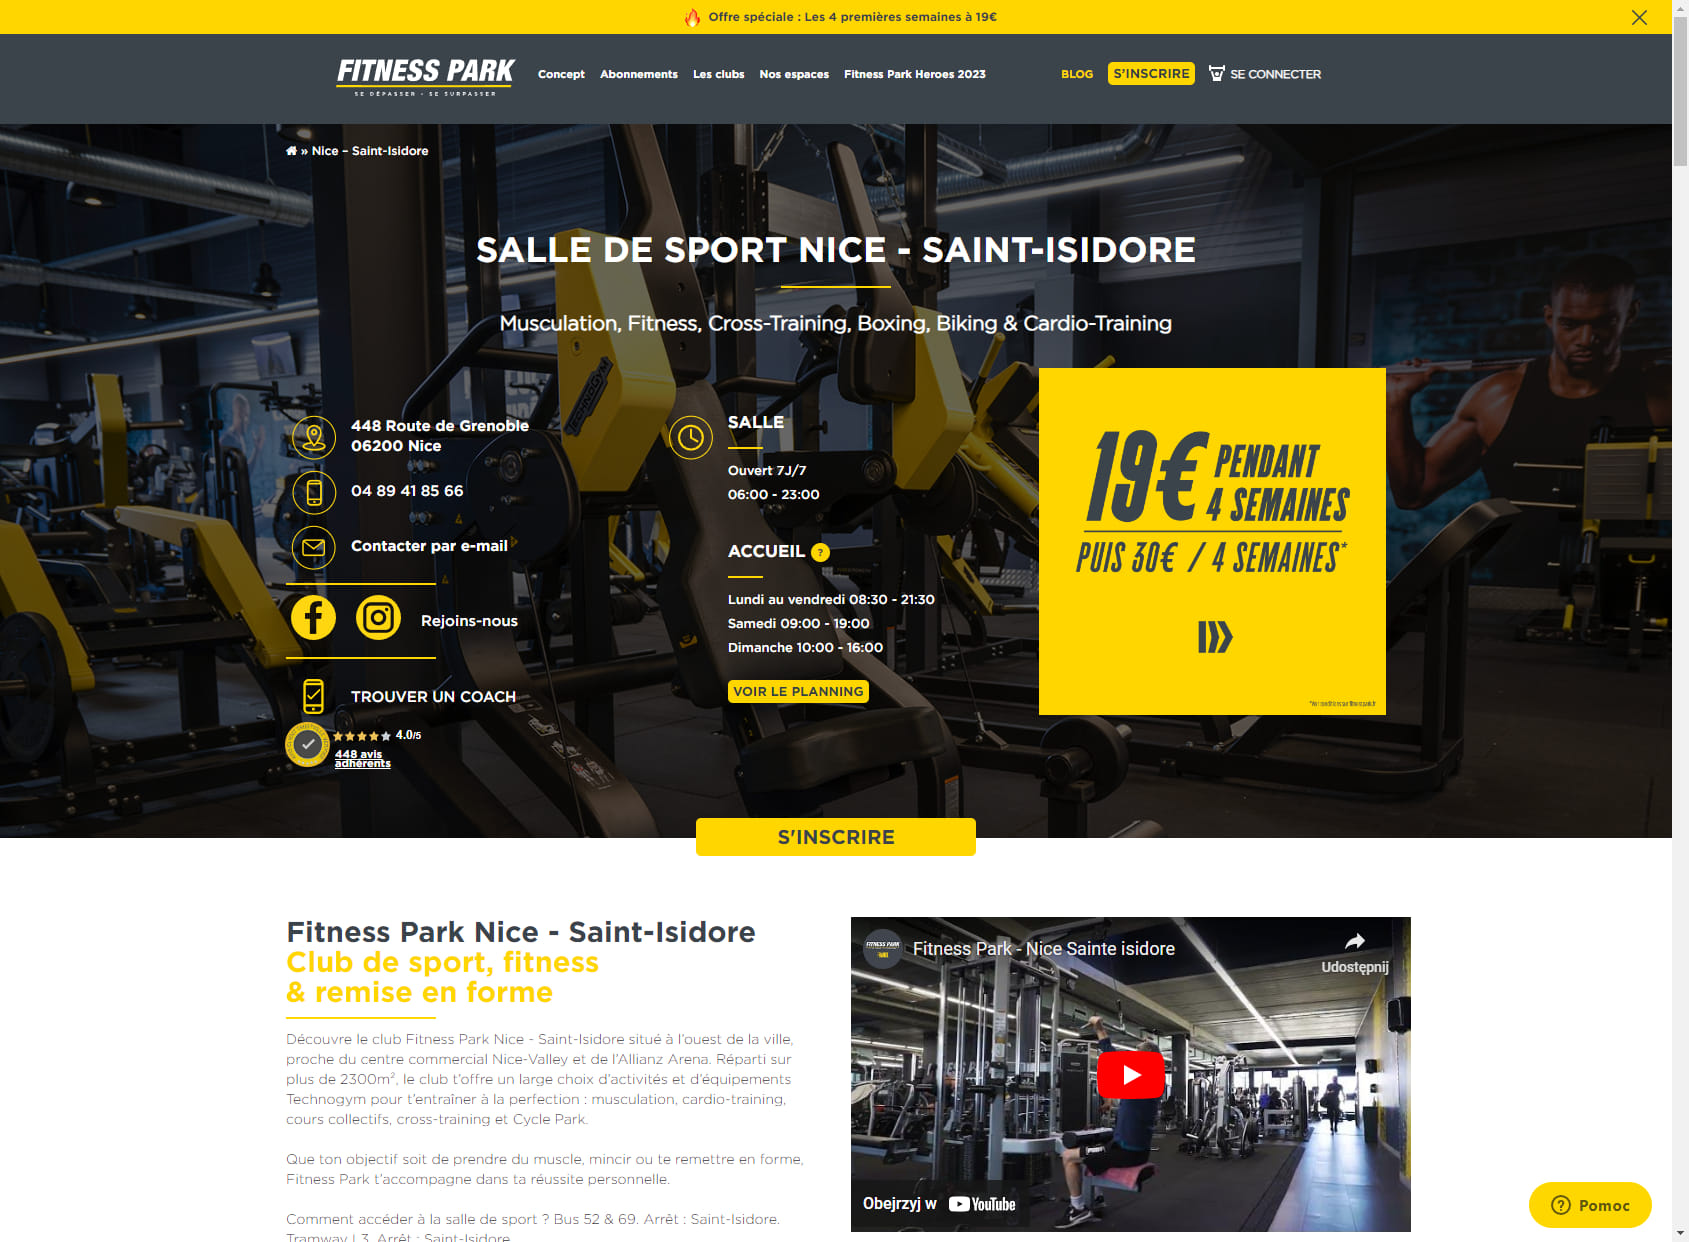 Fitness Park Nice Saint-Isidore